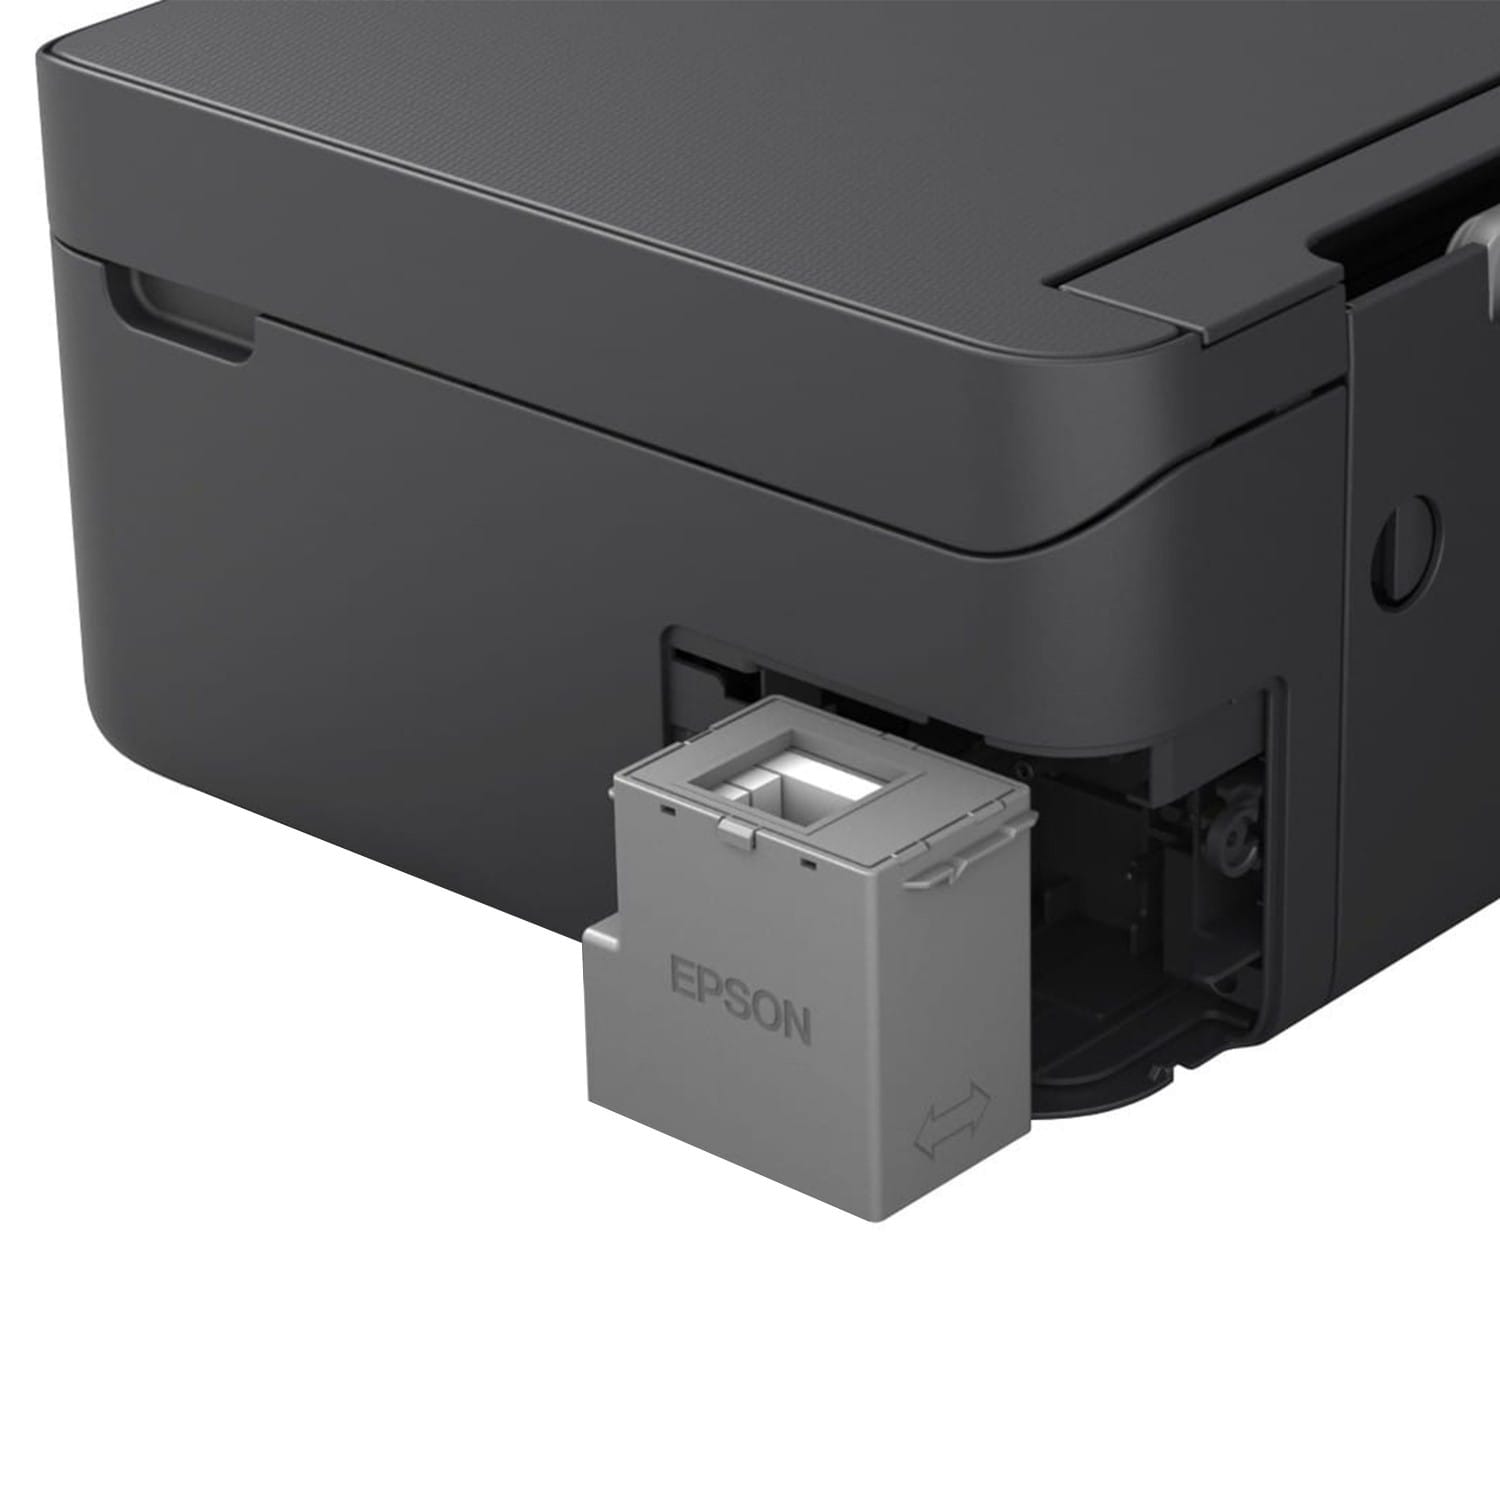 Epson Expression Home XP-3200 Imprimante multifonction – acheter